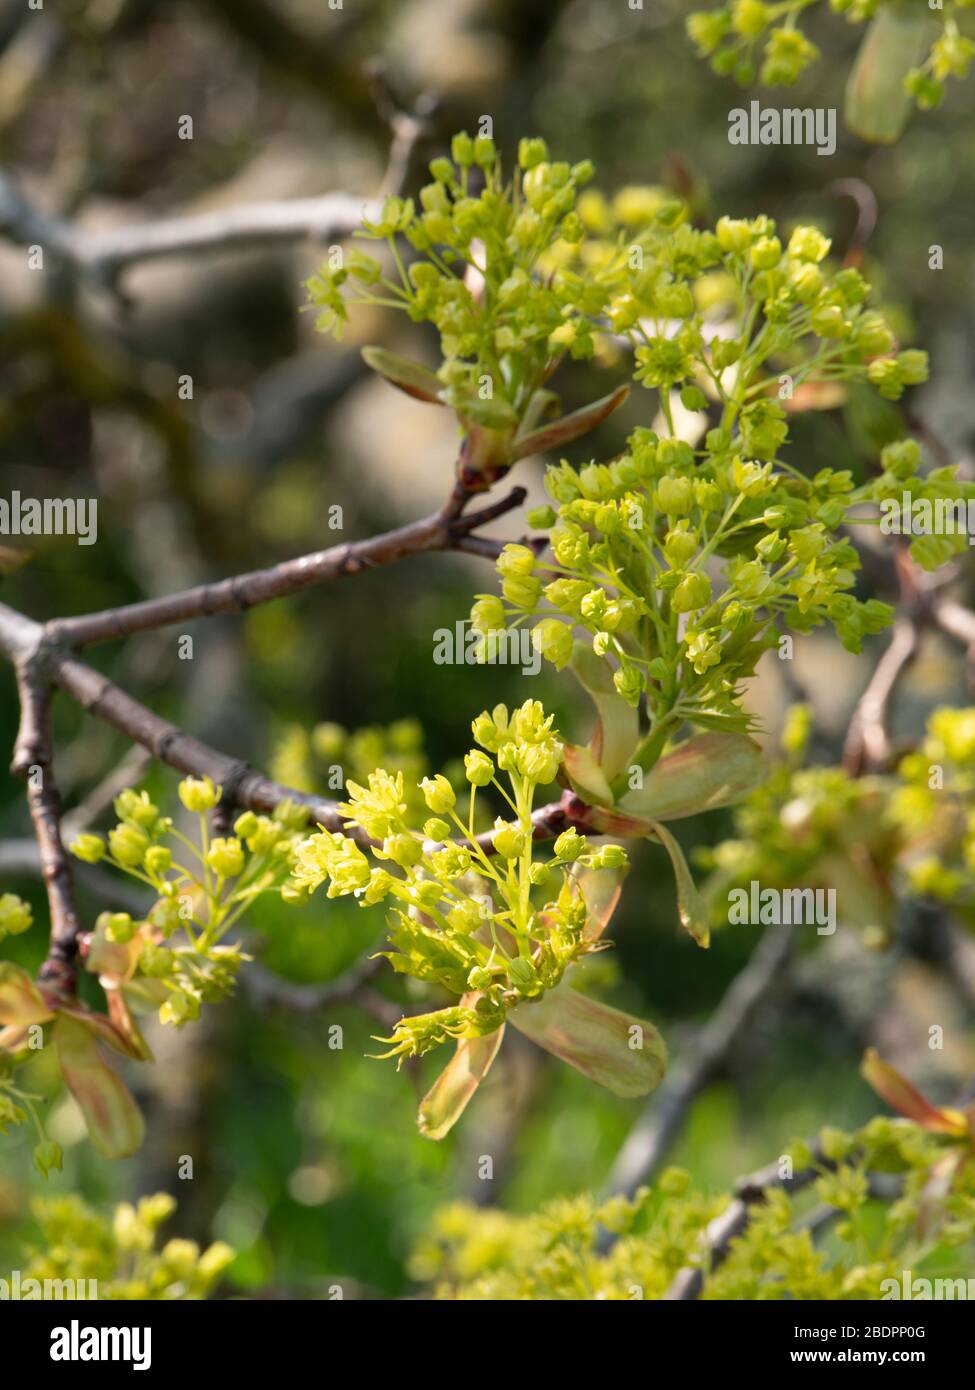 Acero norvegese (Acer platanoidi) che entra in foglia in primavera. Foto Stock